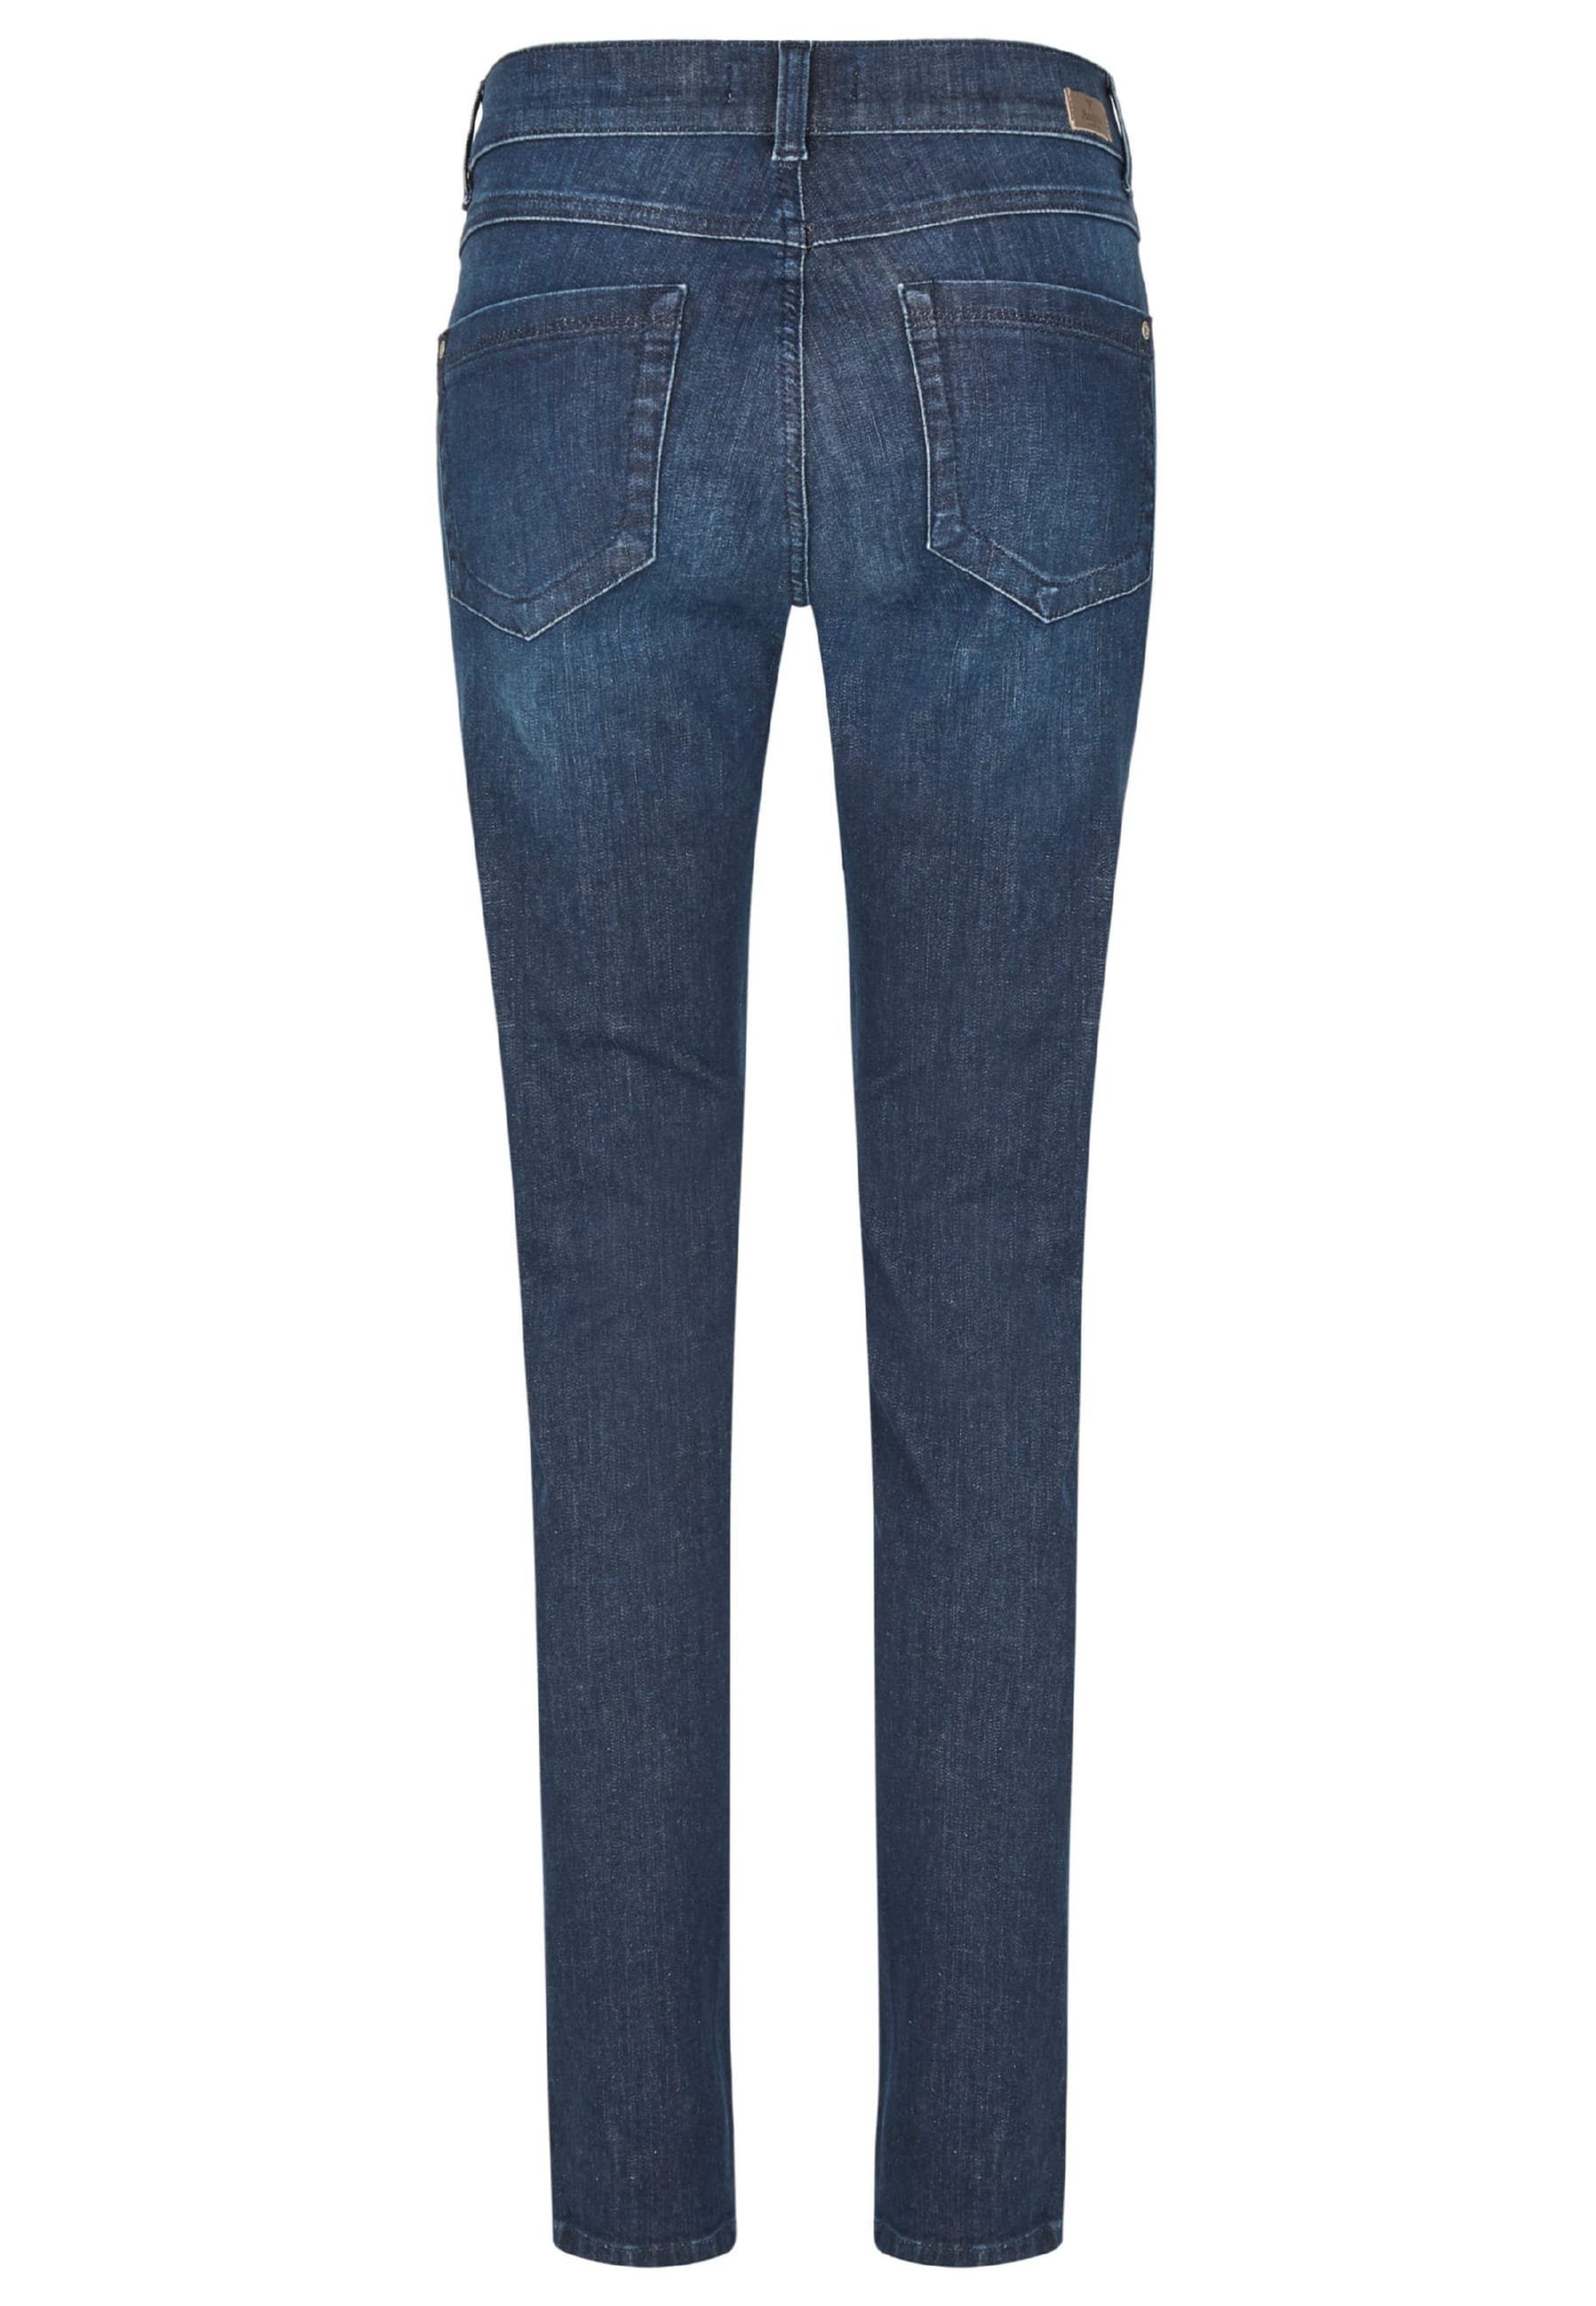 ANGELS Slim-fit-Jeans Jeans Malu Zip mit mit indigo Label-Applikationen Zierreißverschlüssen